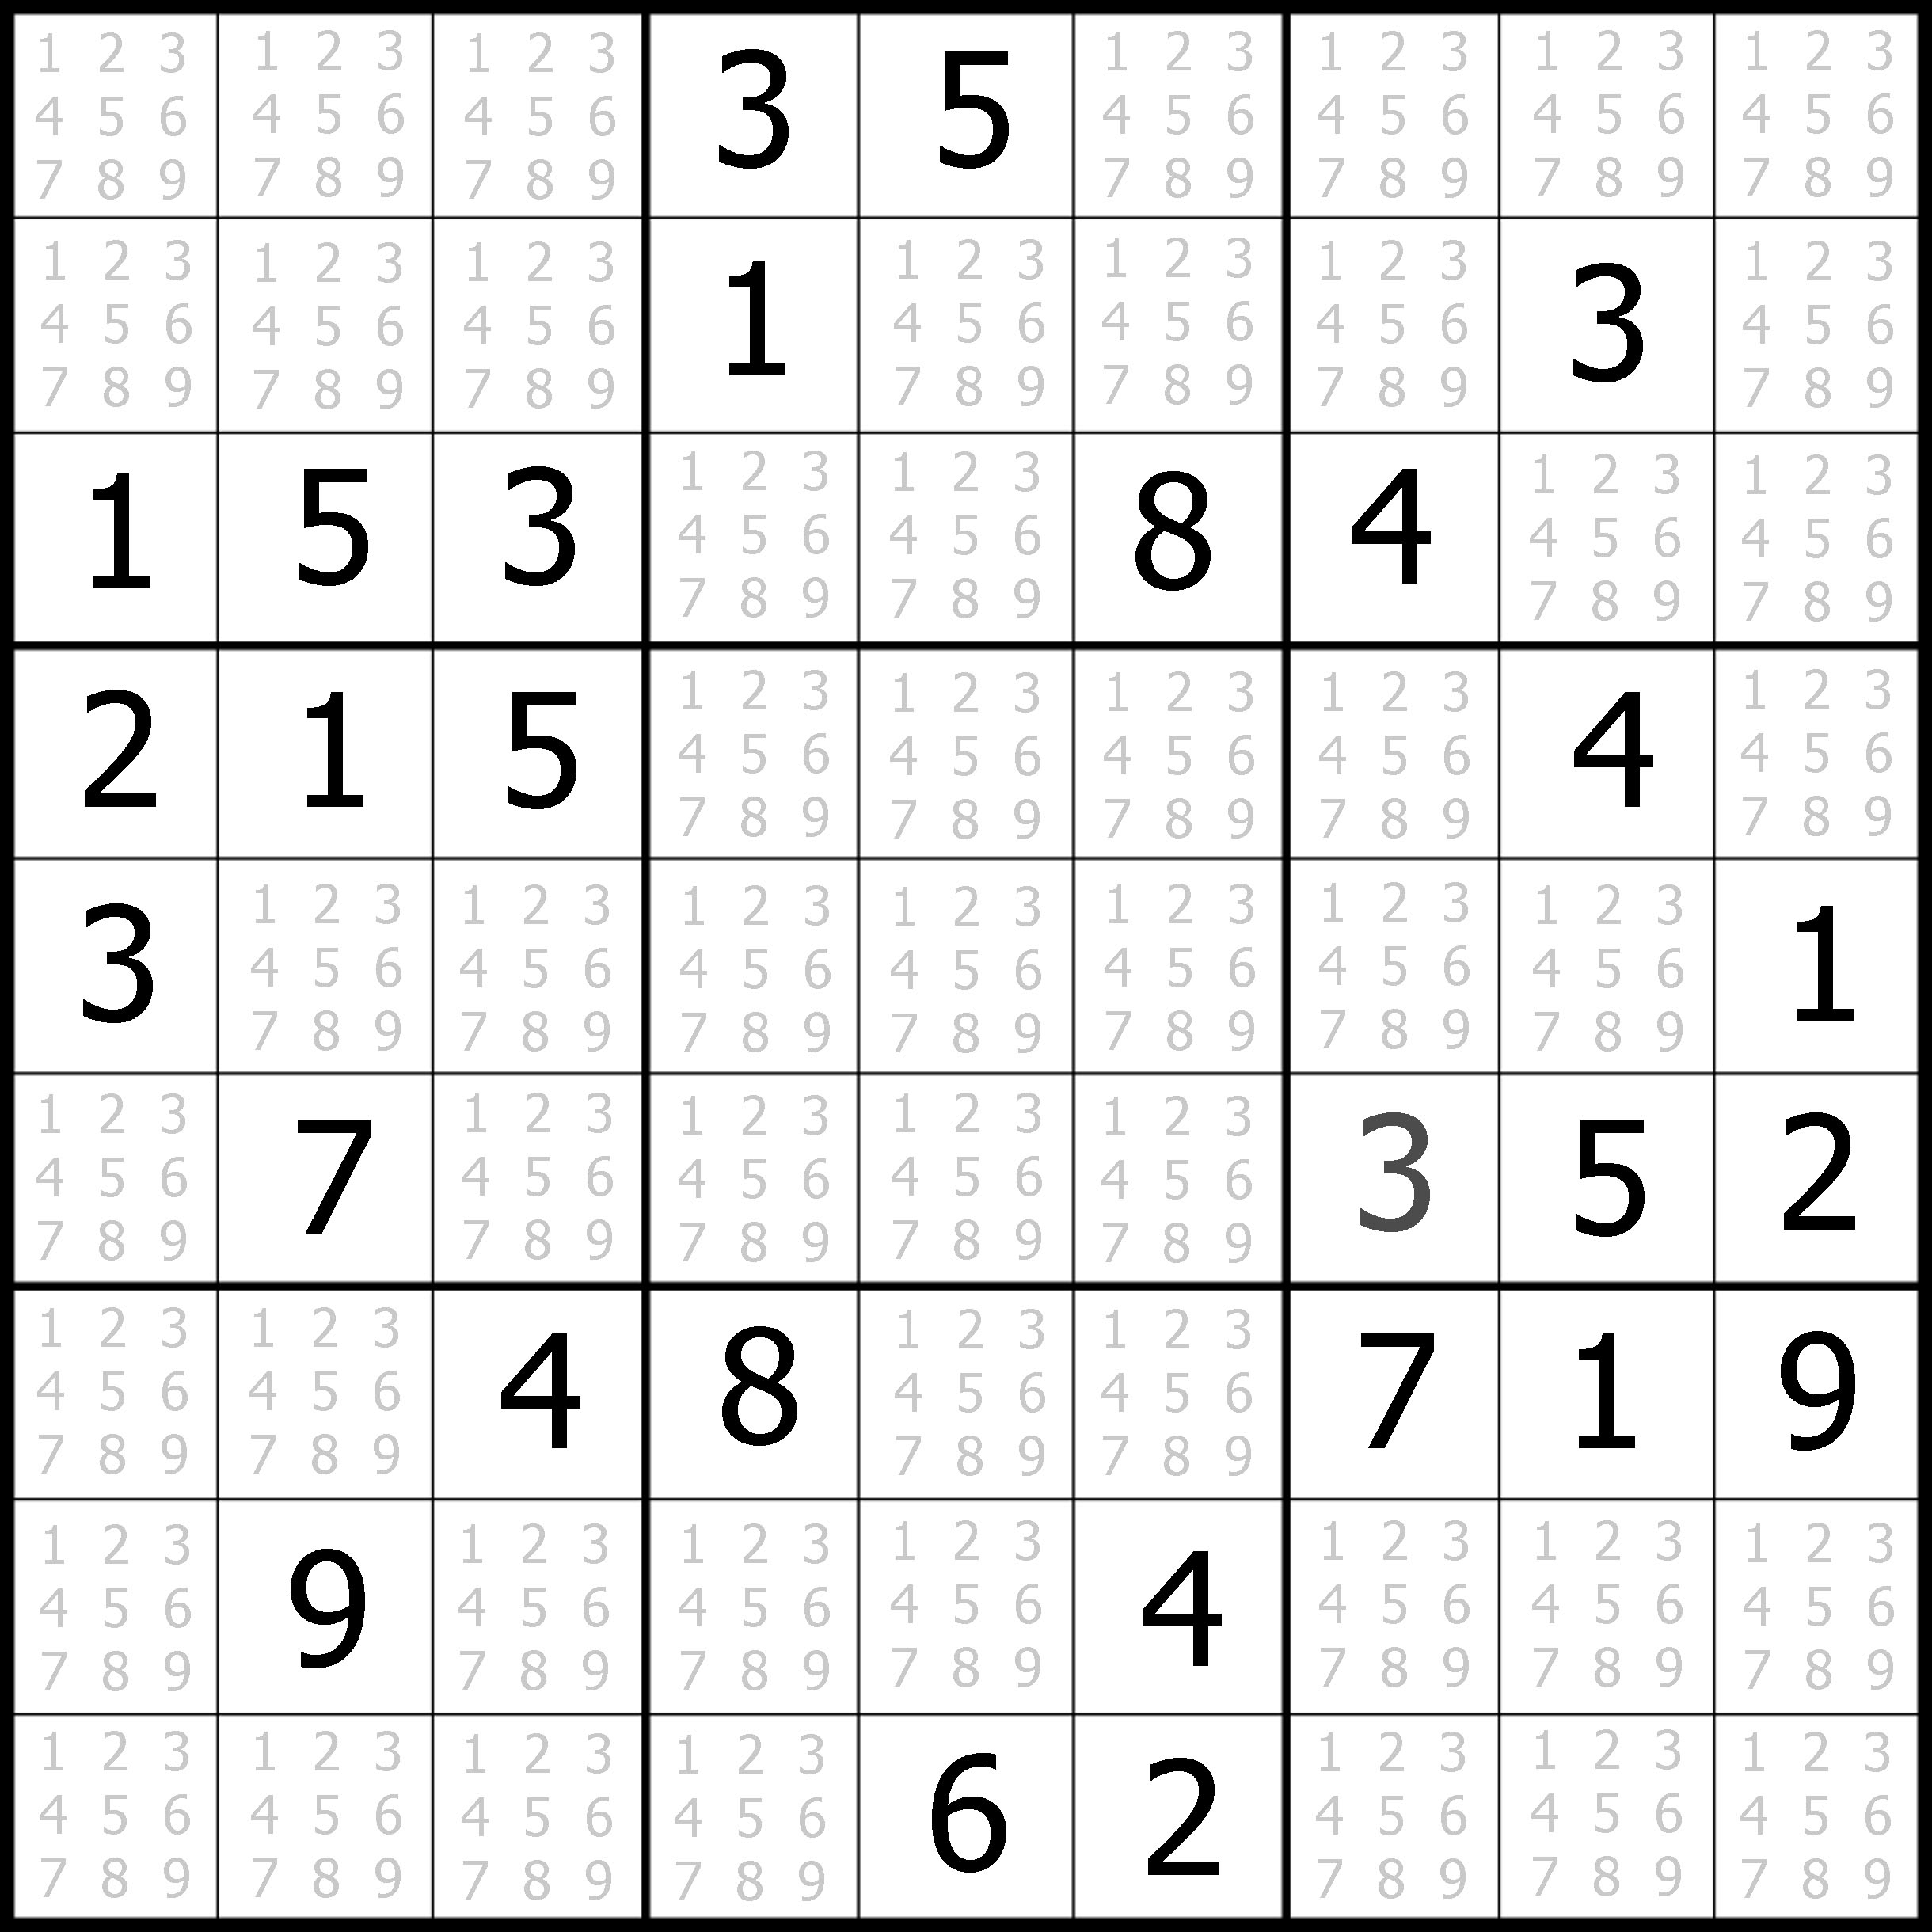 Free Printable Sudoku Puzzles.com